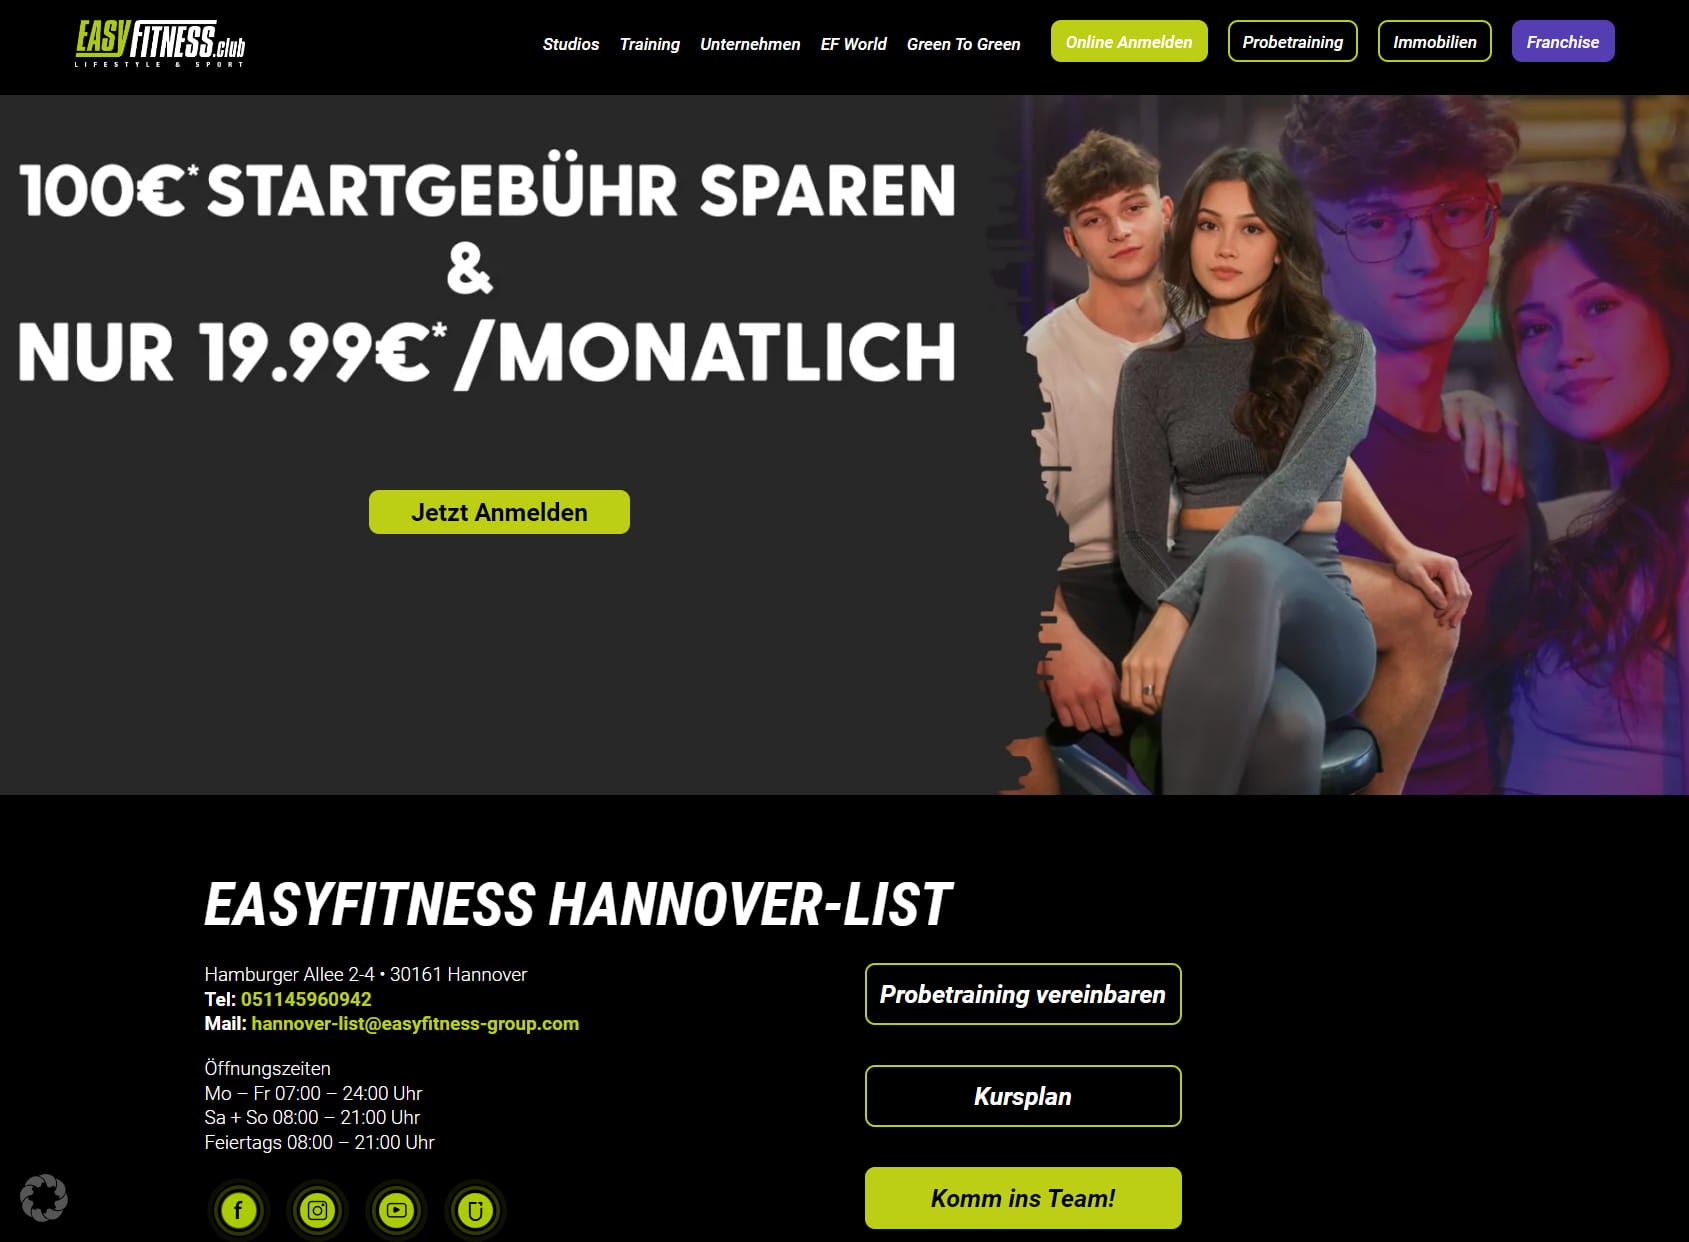 EASYFITNESS.club Hannover-List